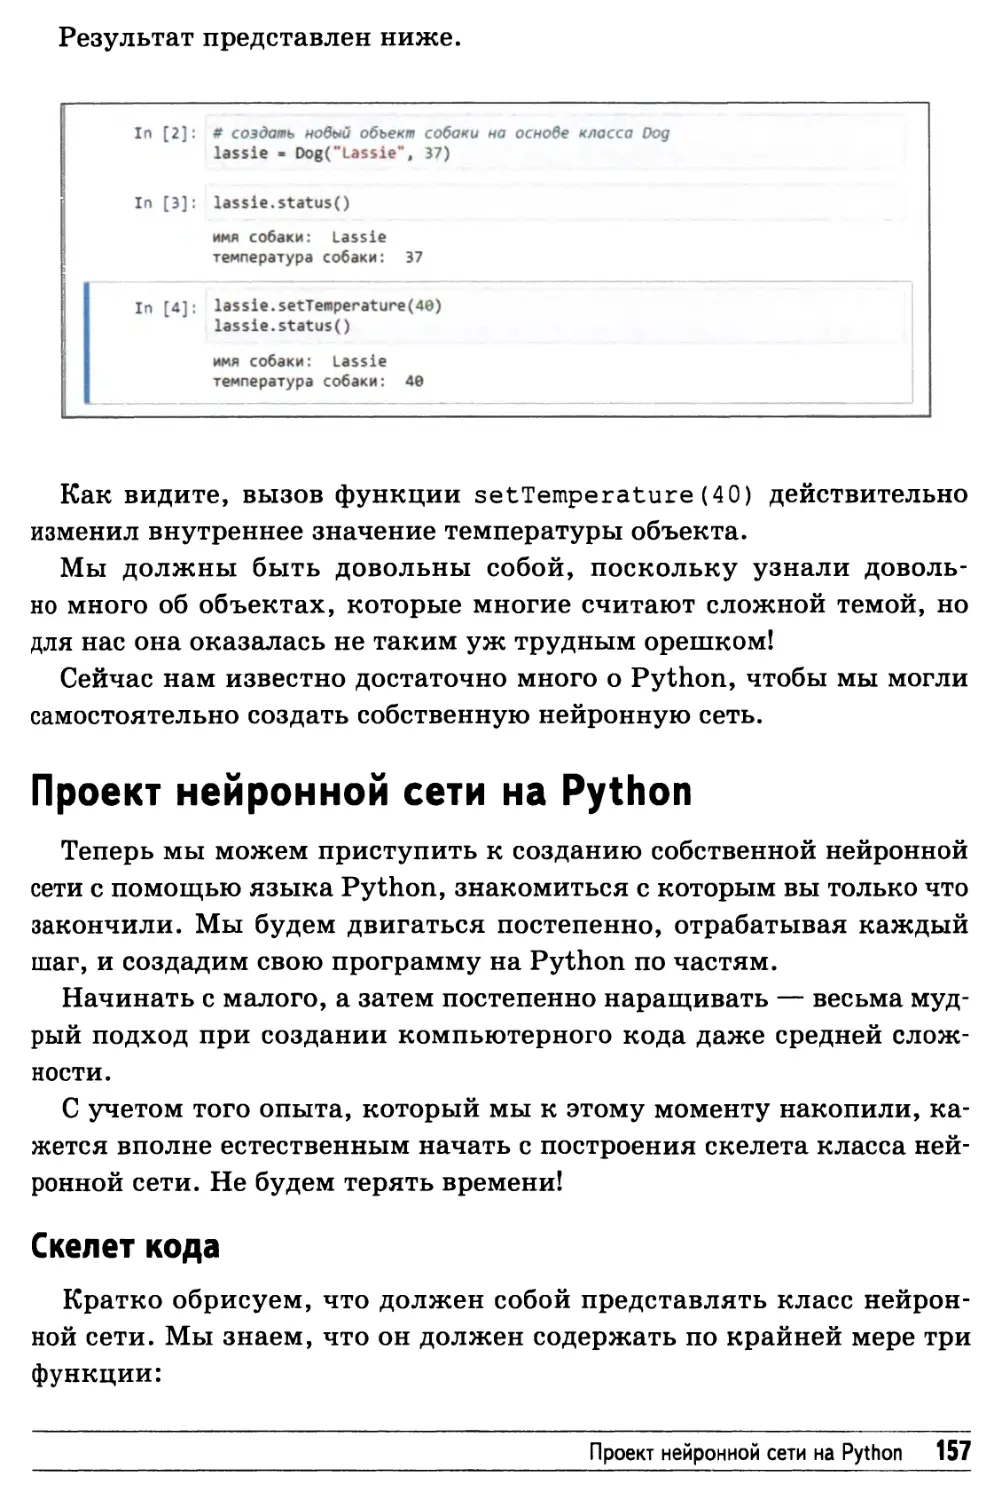 Проект нейронной сети на Python